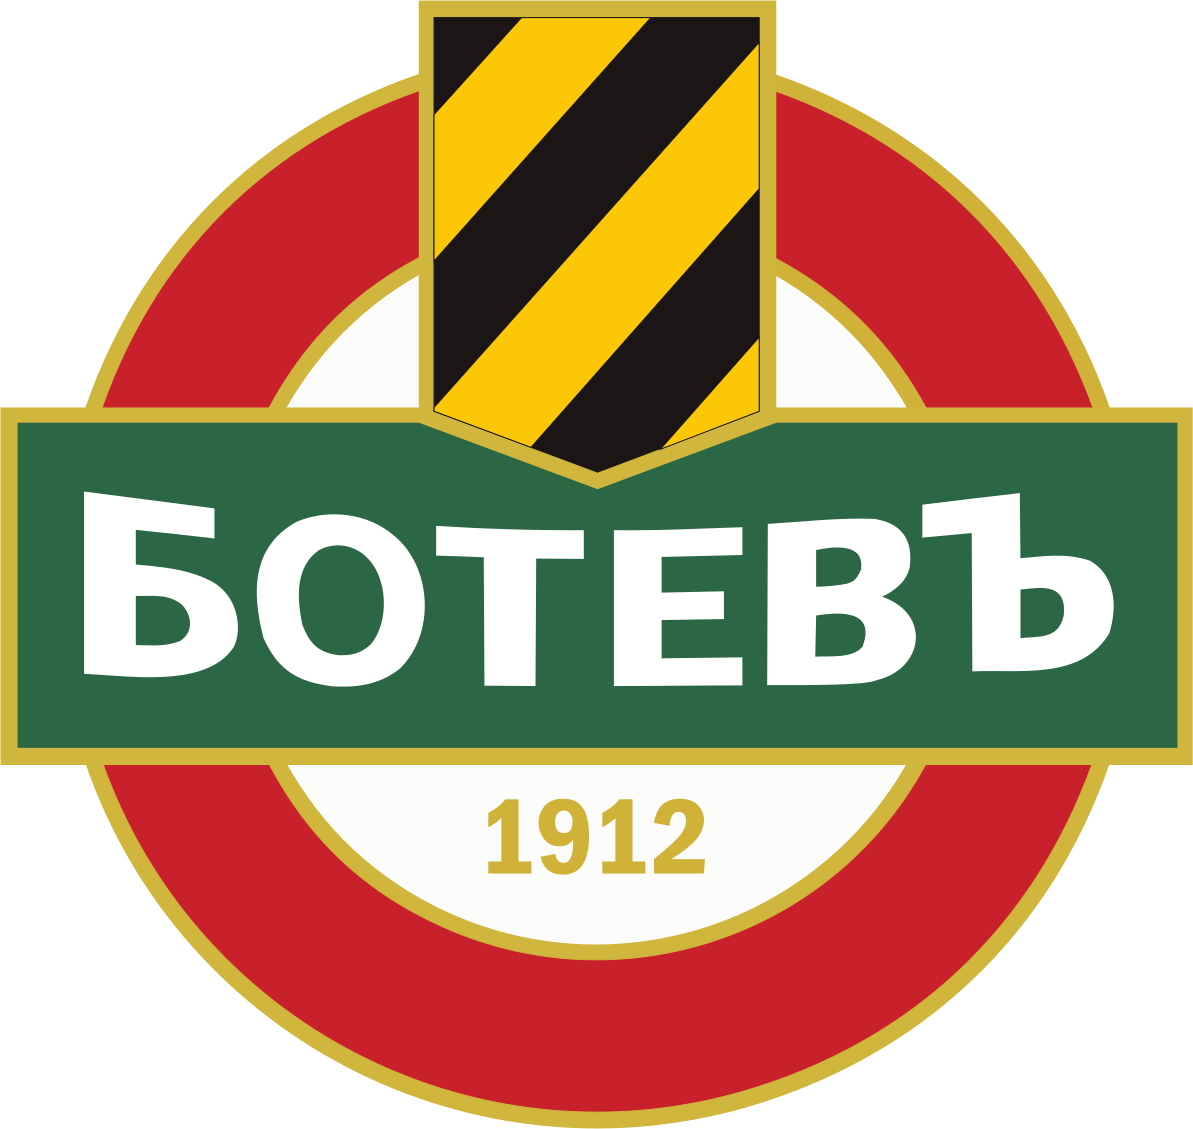 FK Botev Plovdiv